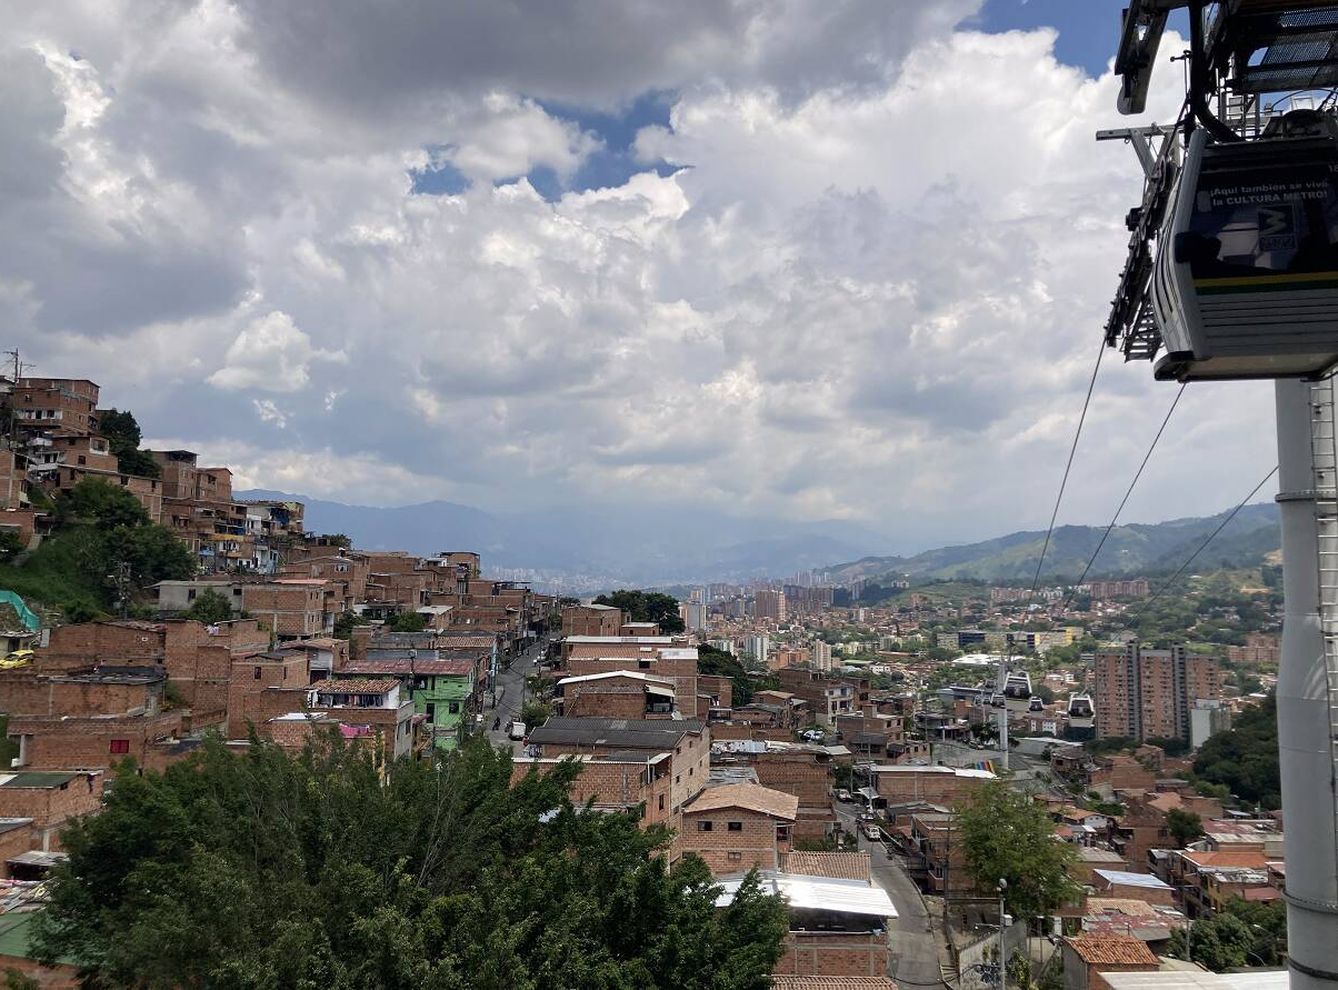 Vista de M0edellín desde el metrocable de la ciudad. Foto: Marta Montojo